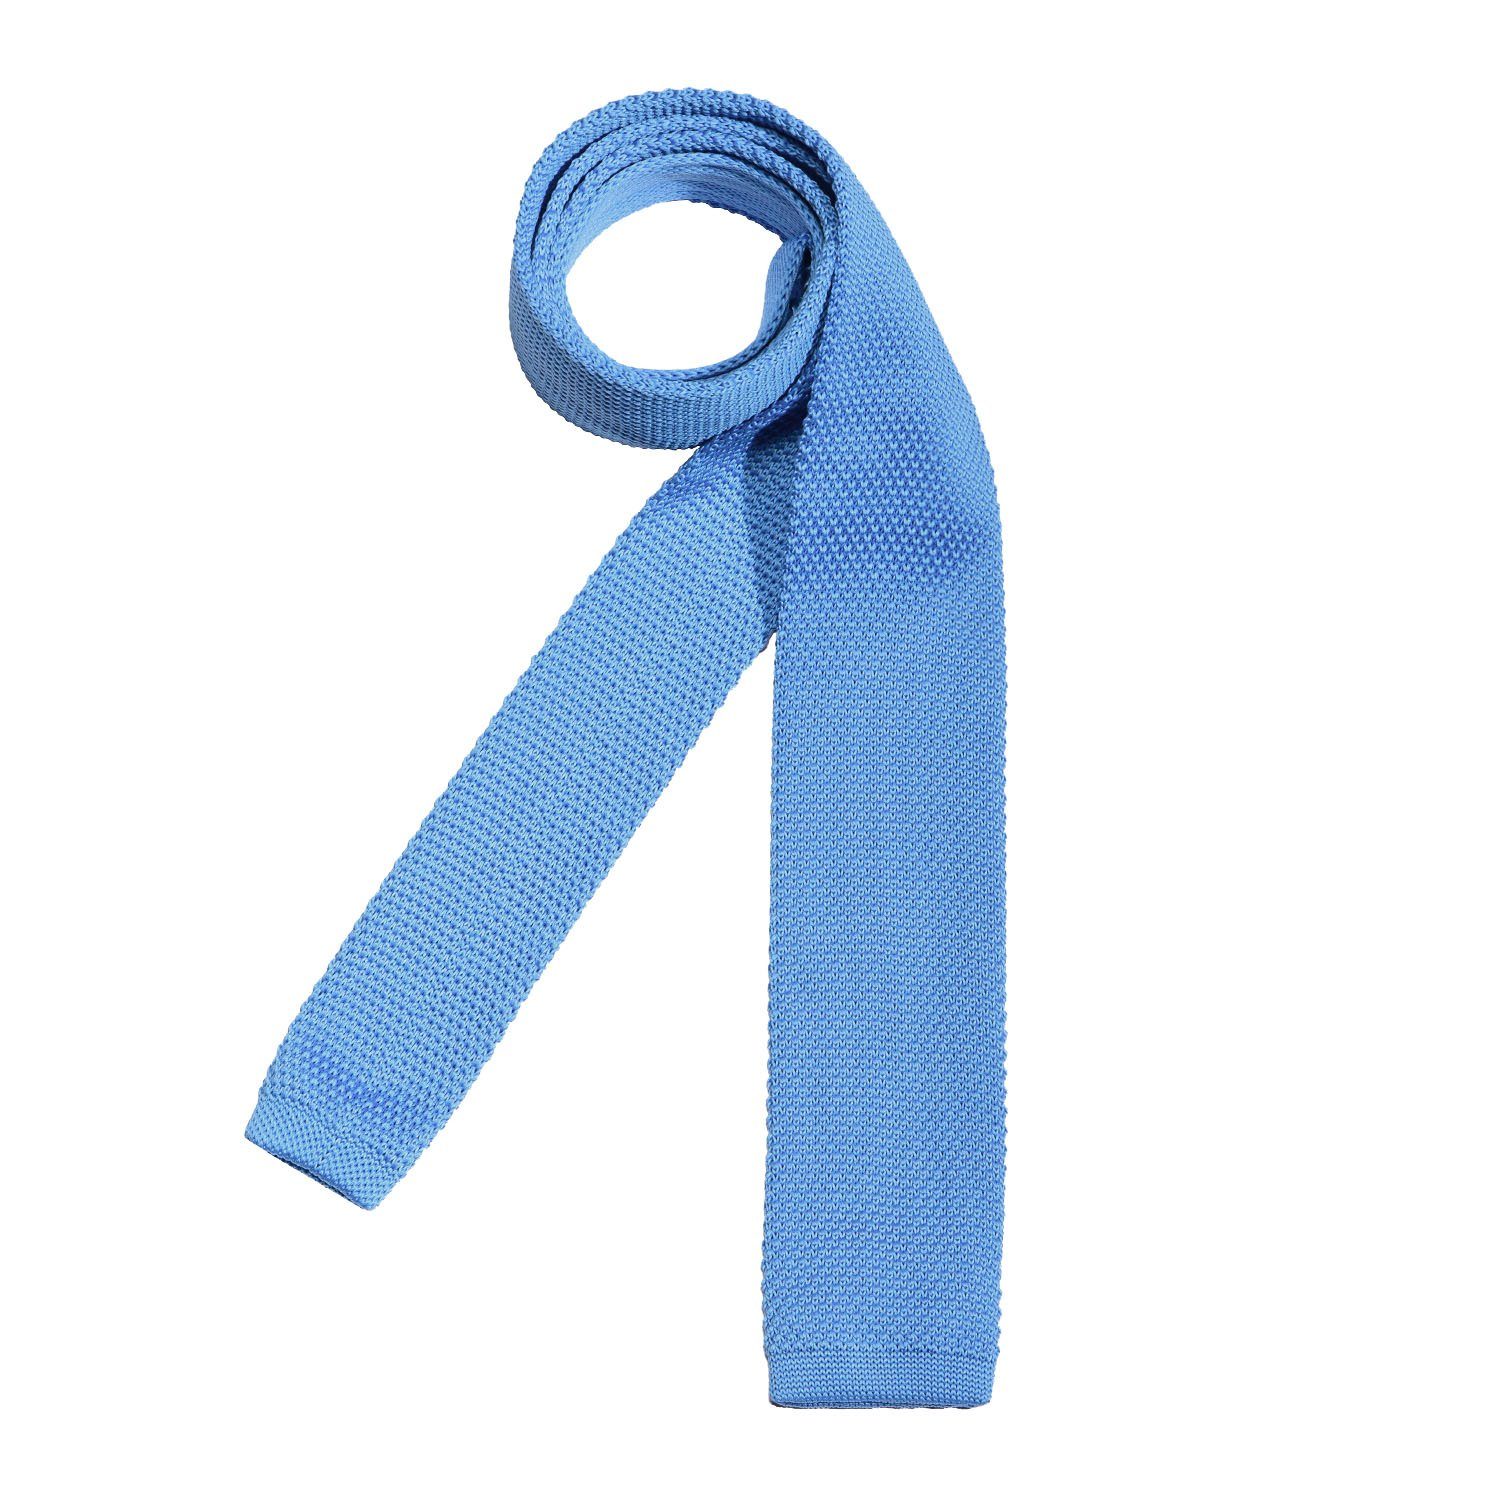 DonDon Krawatte 7 cm für Herren klassische Krawatte für Büro oder festliche Veranstaltungen